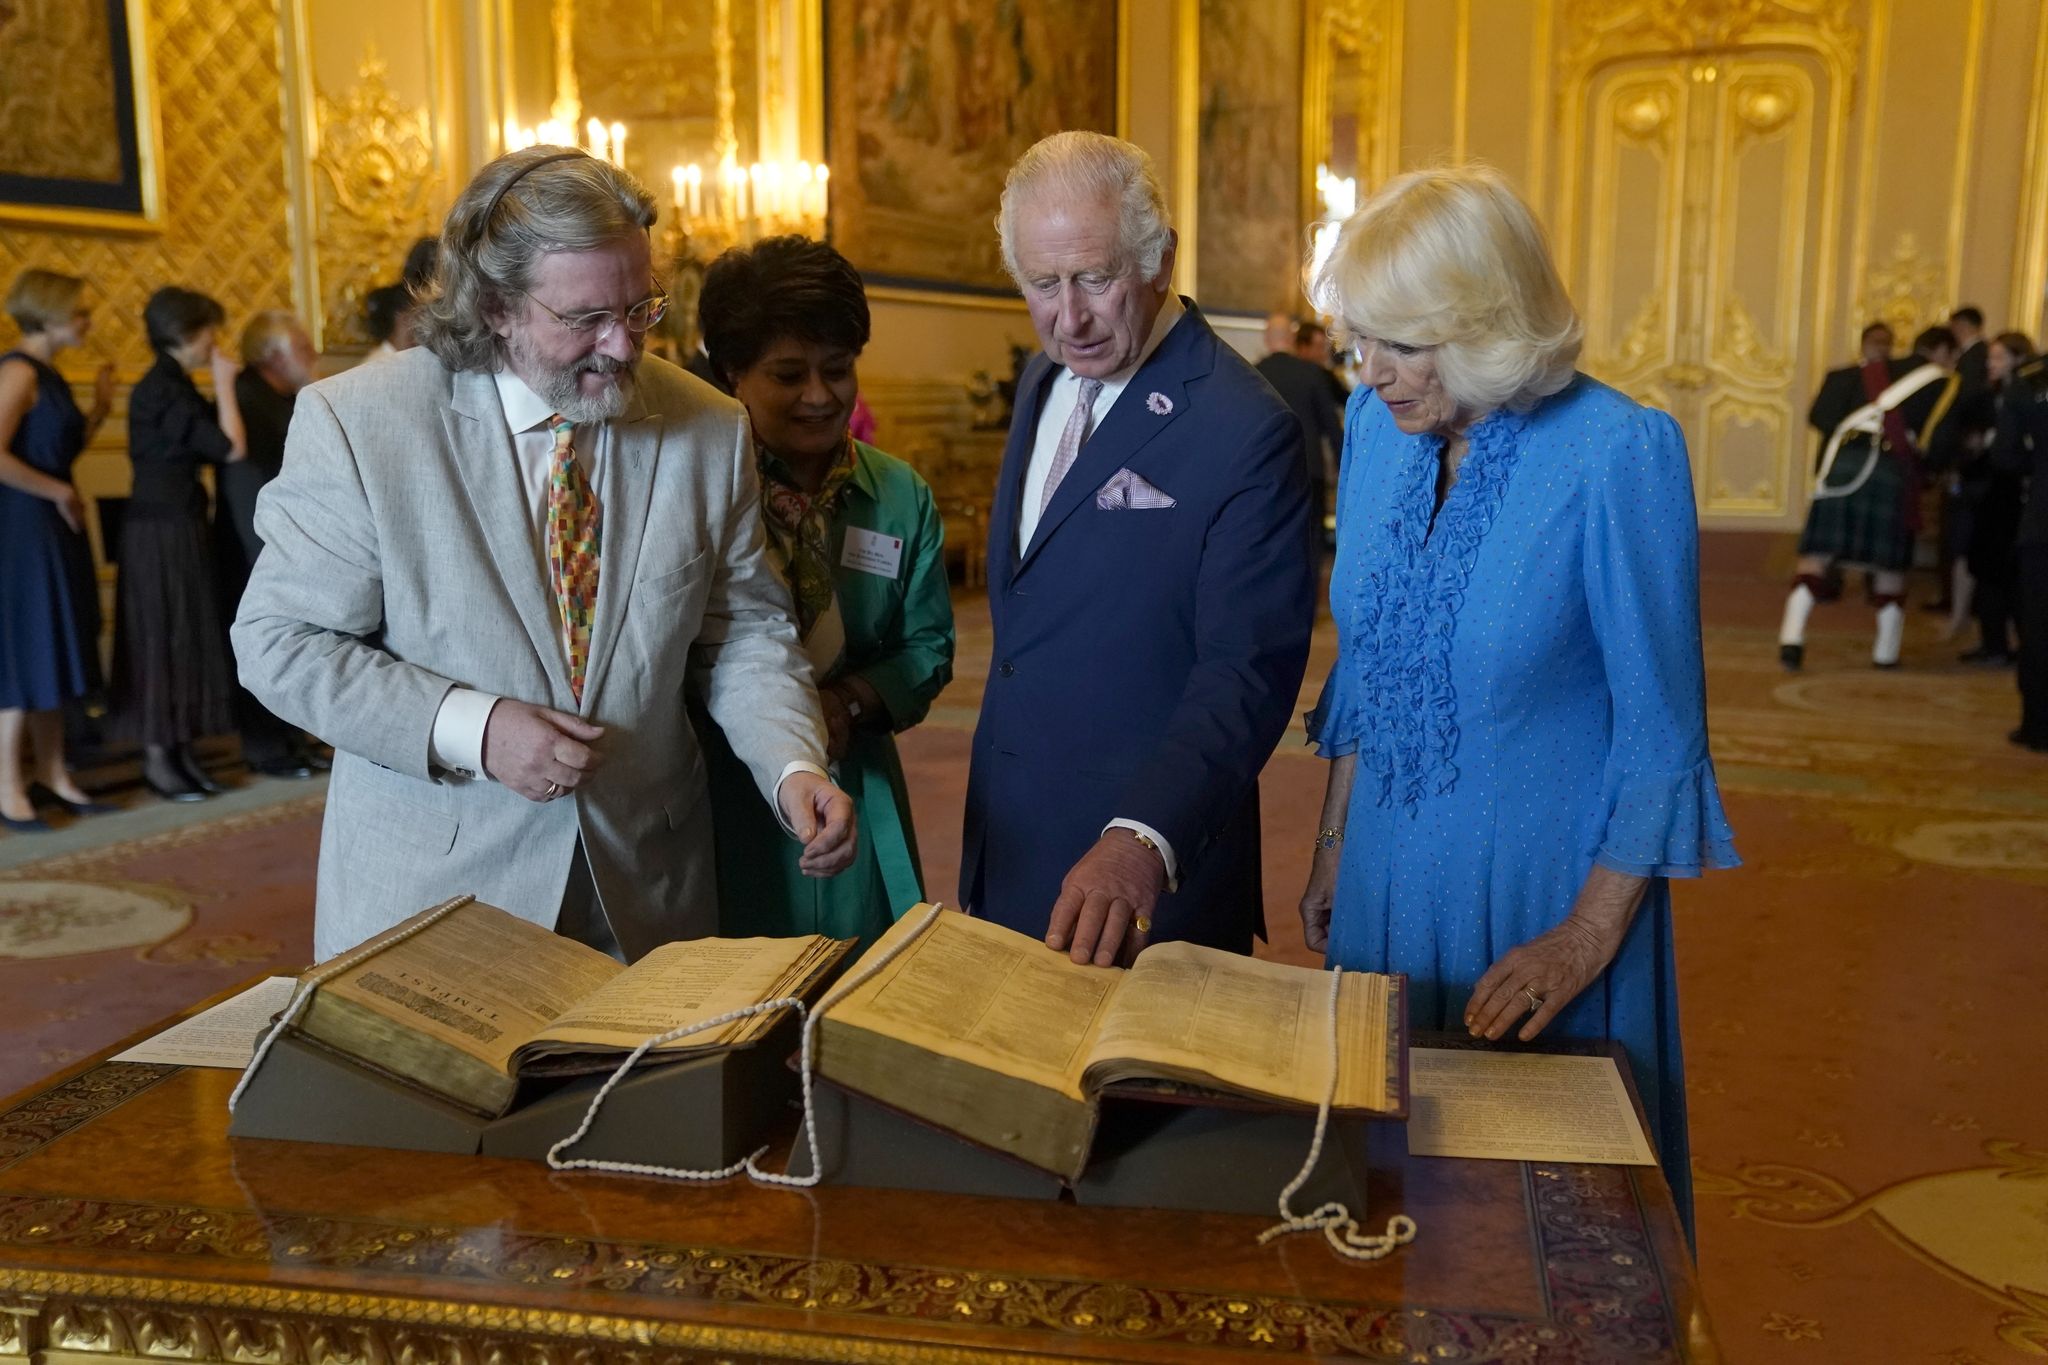 König Charles III. und Königin Camilla betrachten das erste Shakespeare-Folio während eines Empfangs auf Schloss Windsor.